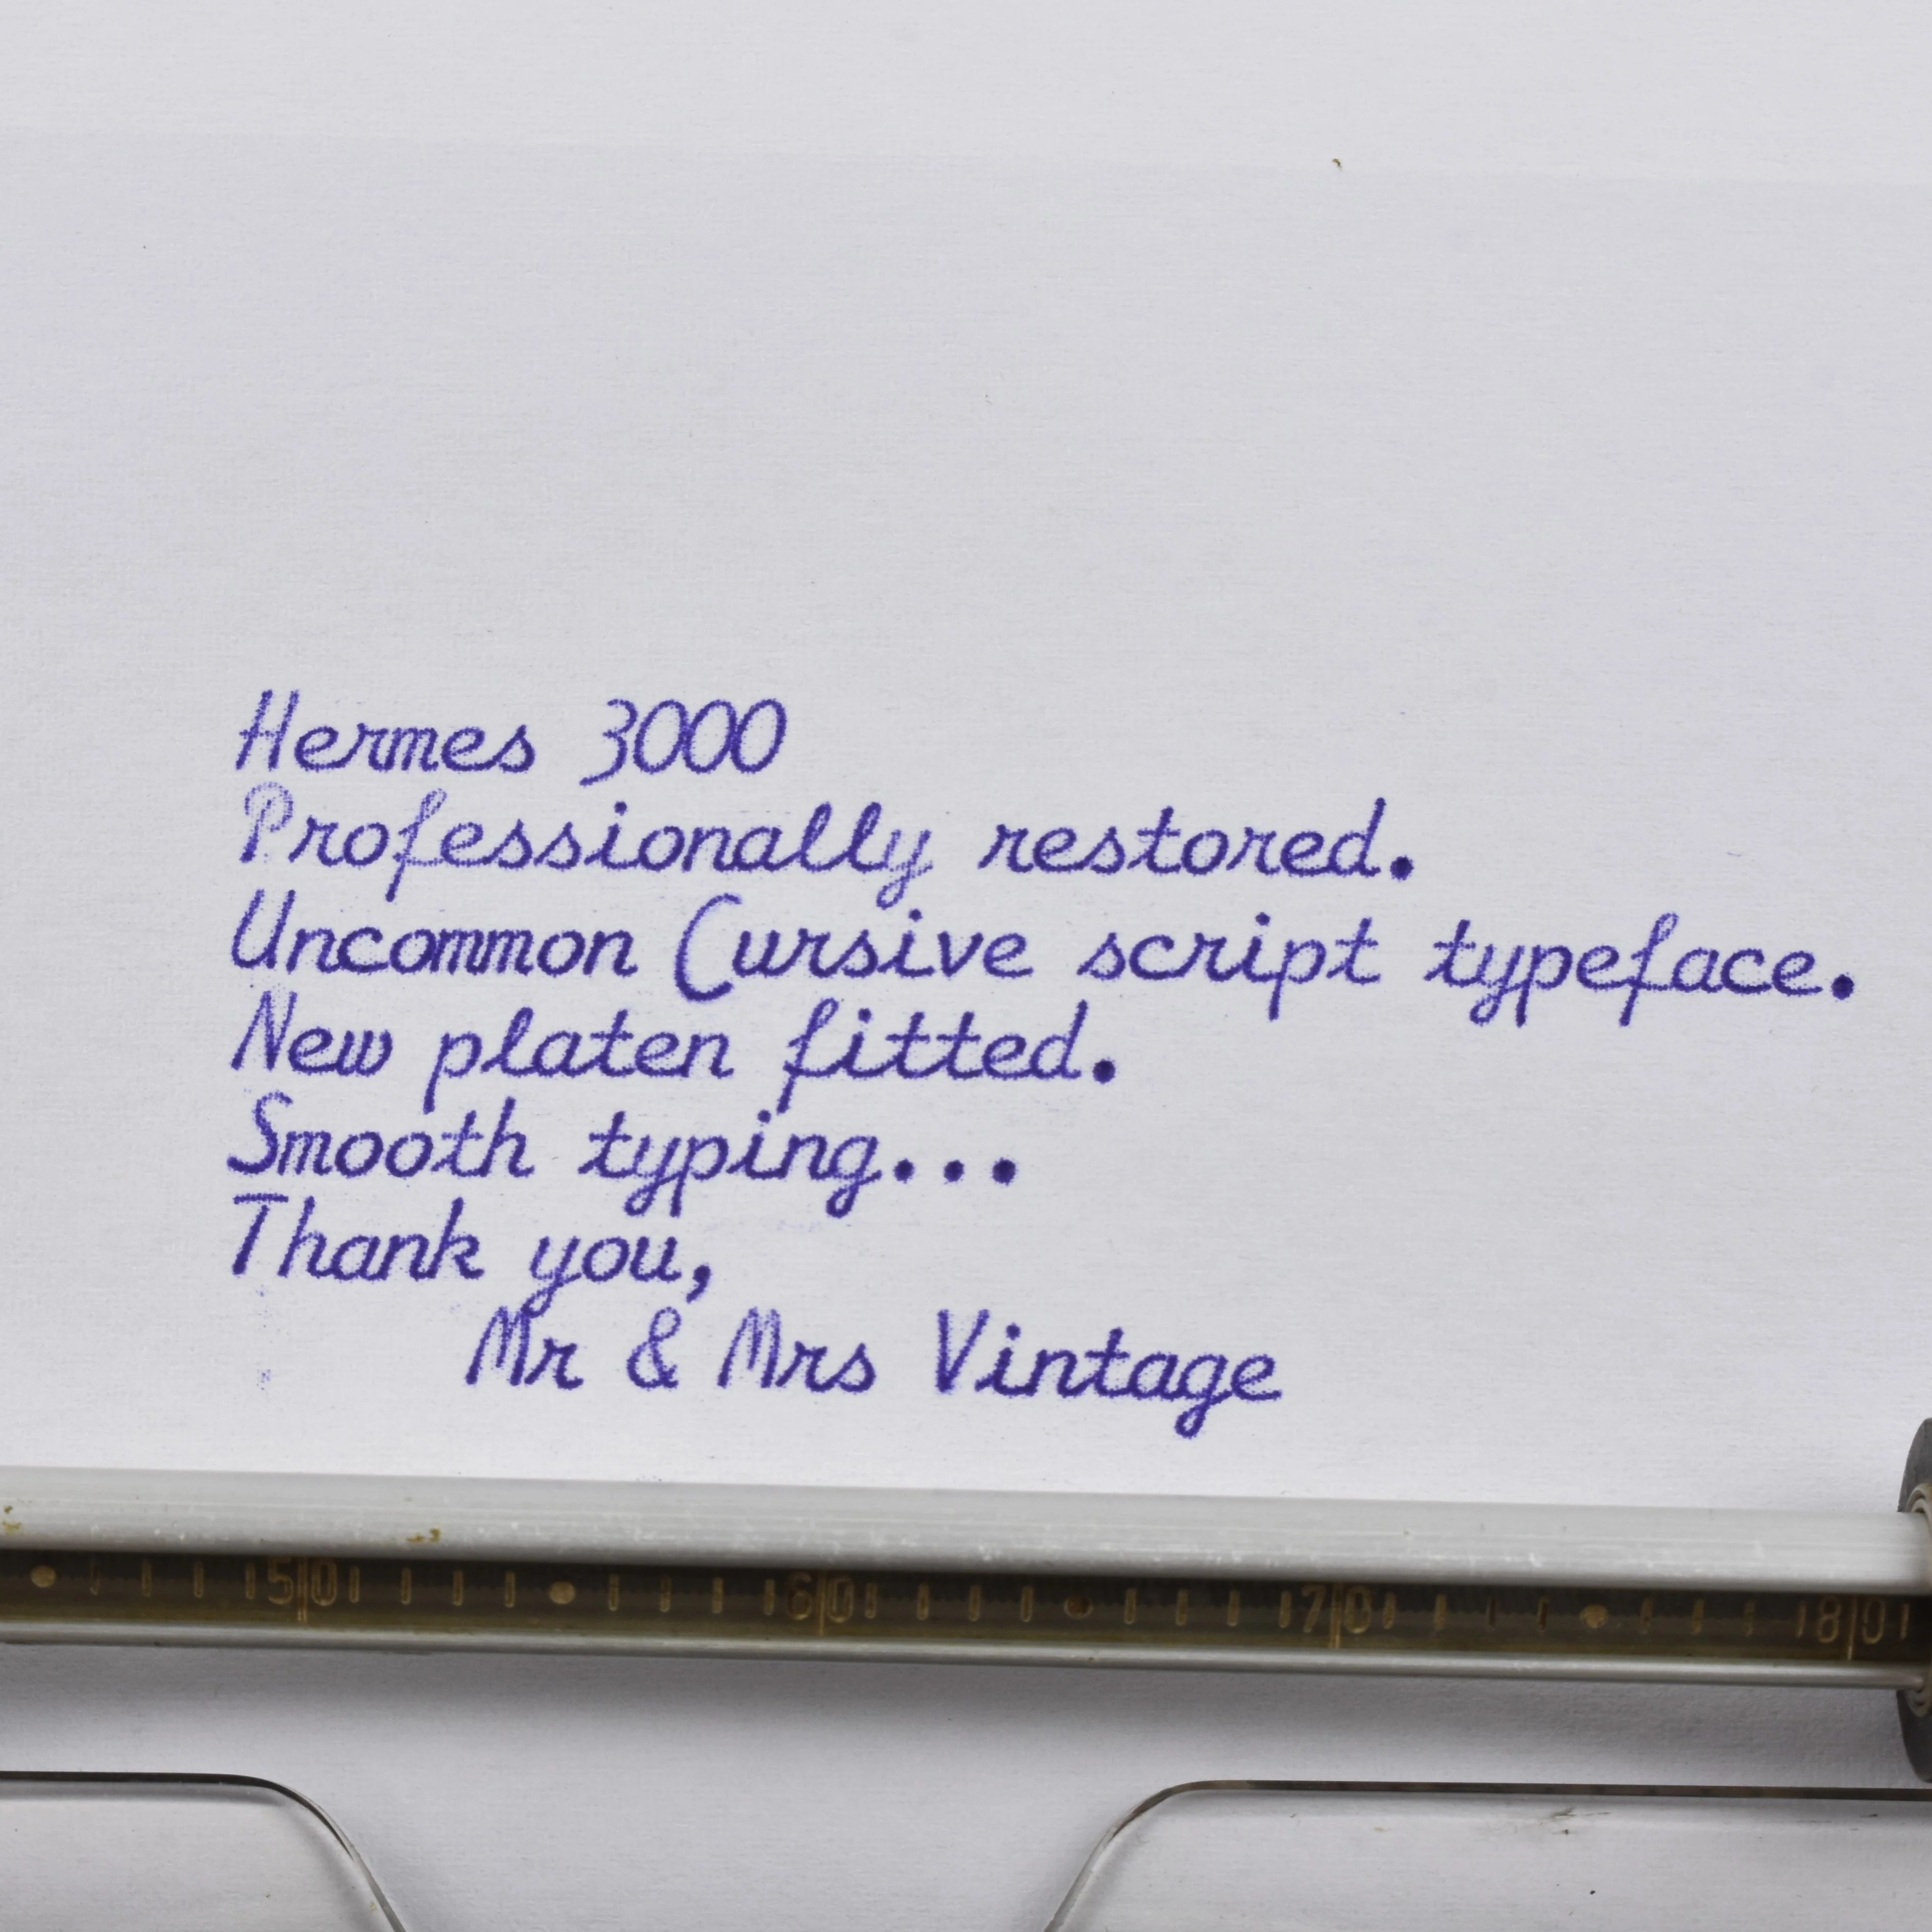 czcionka, font, krój pisma w maszynie do pisania